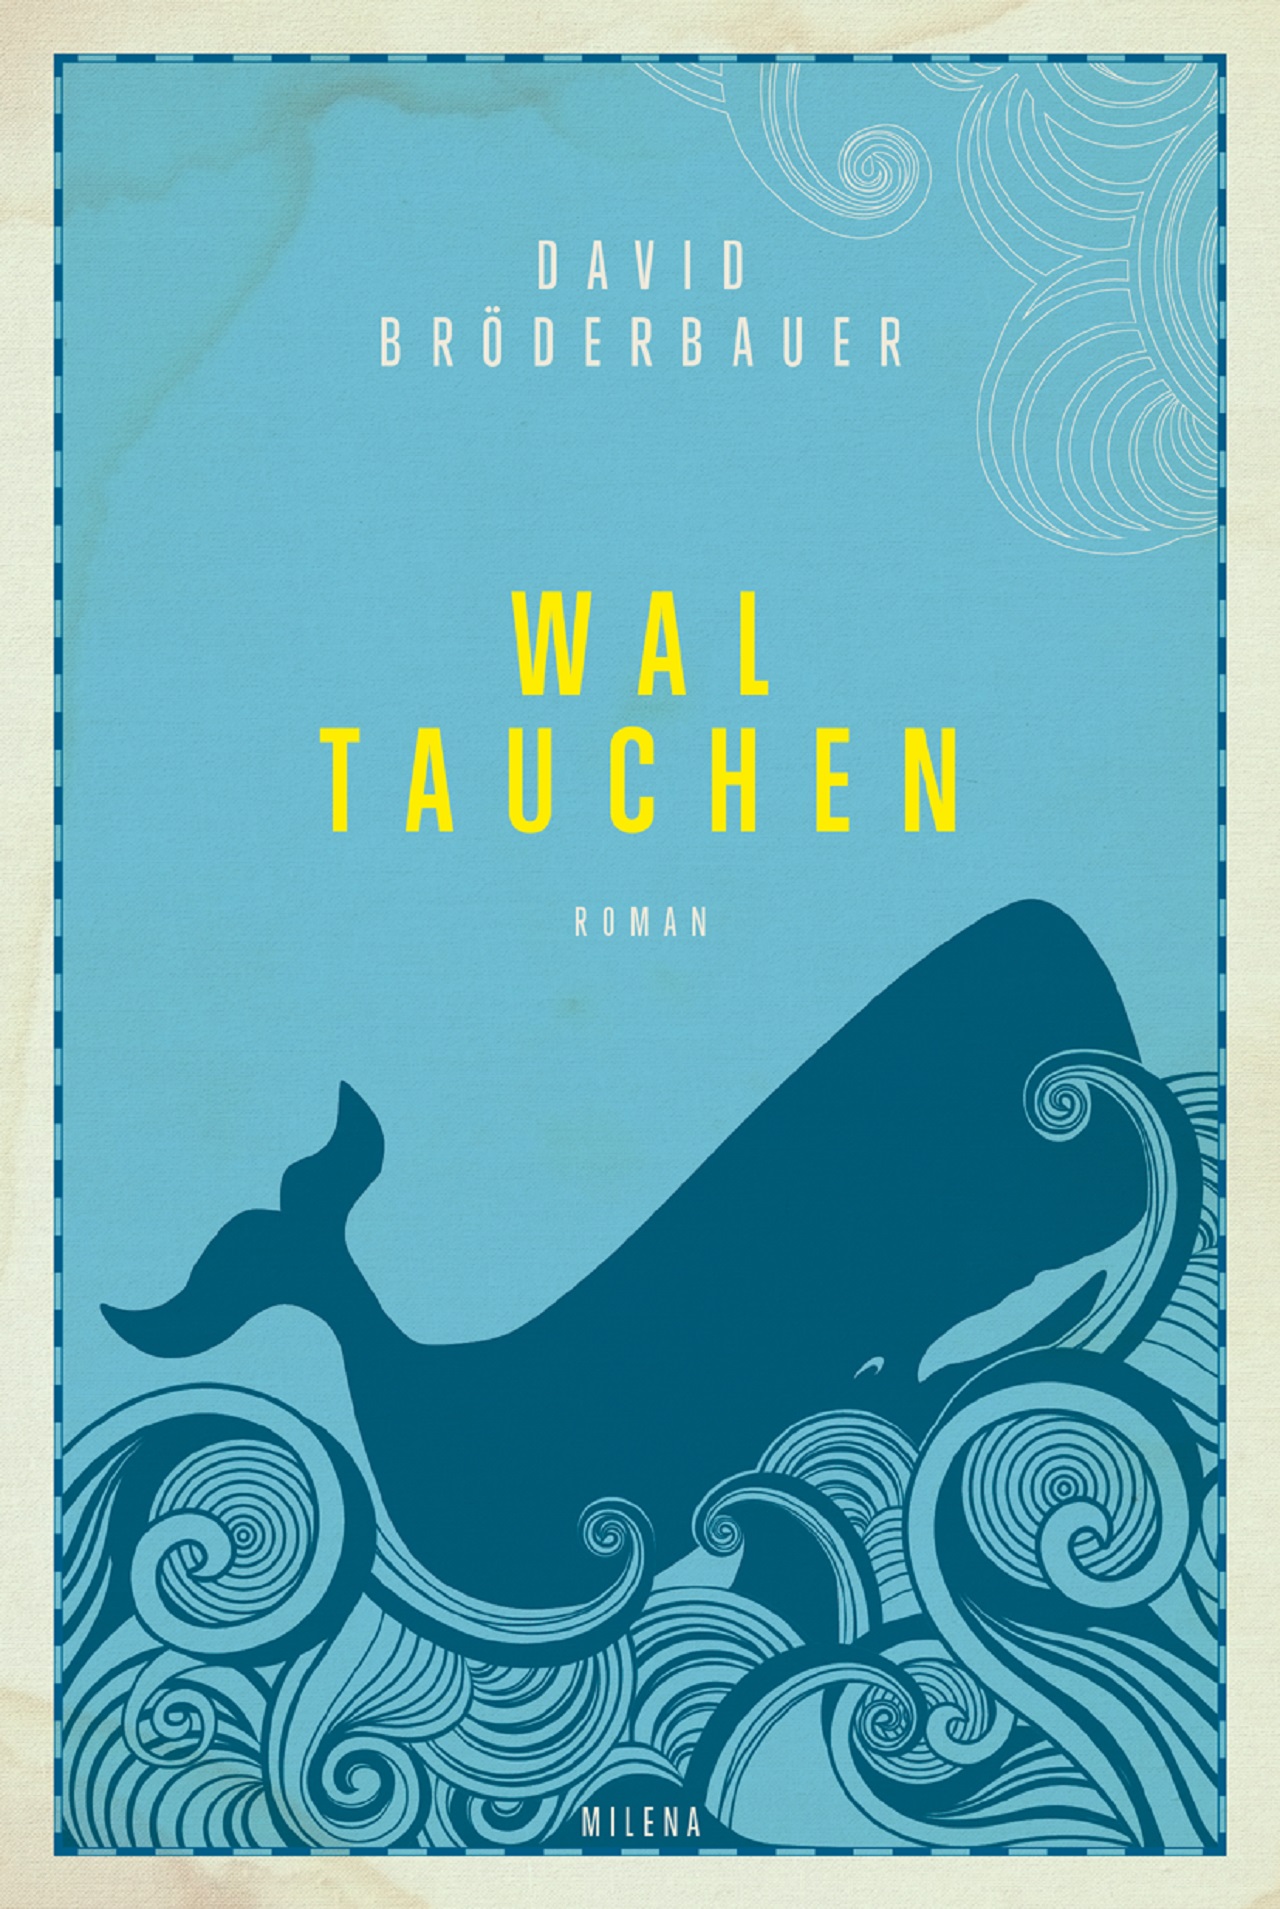 Buchcover "Waltauchen" von David Bröderbauer